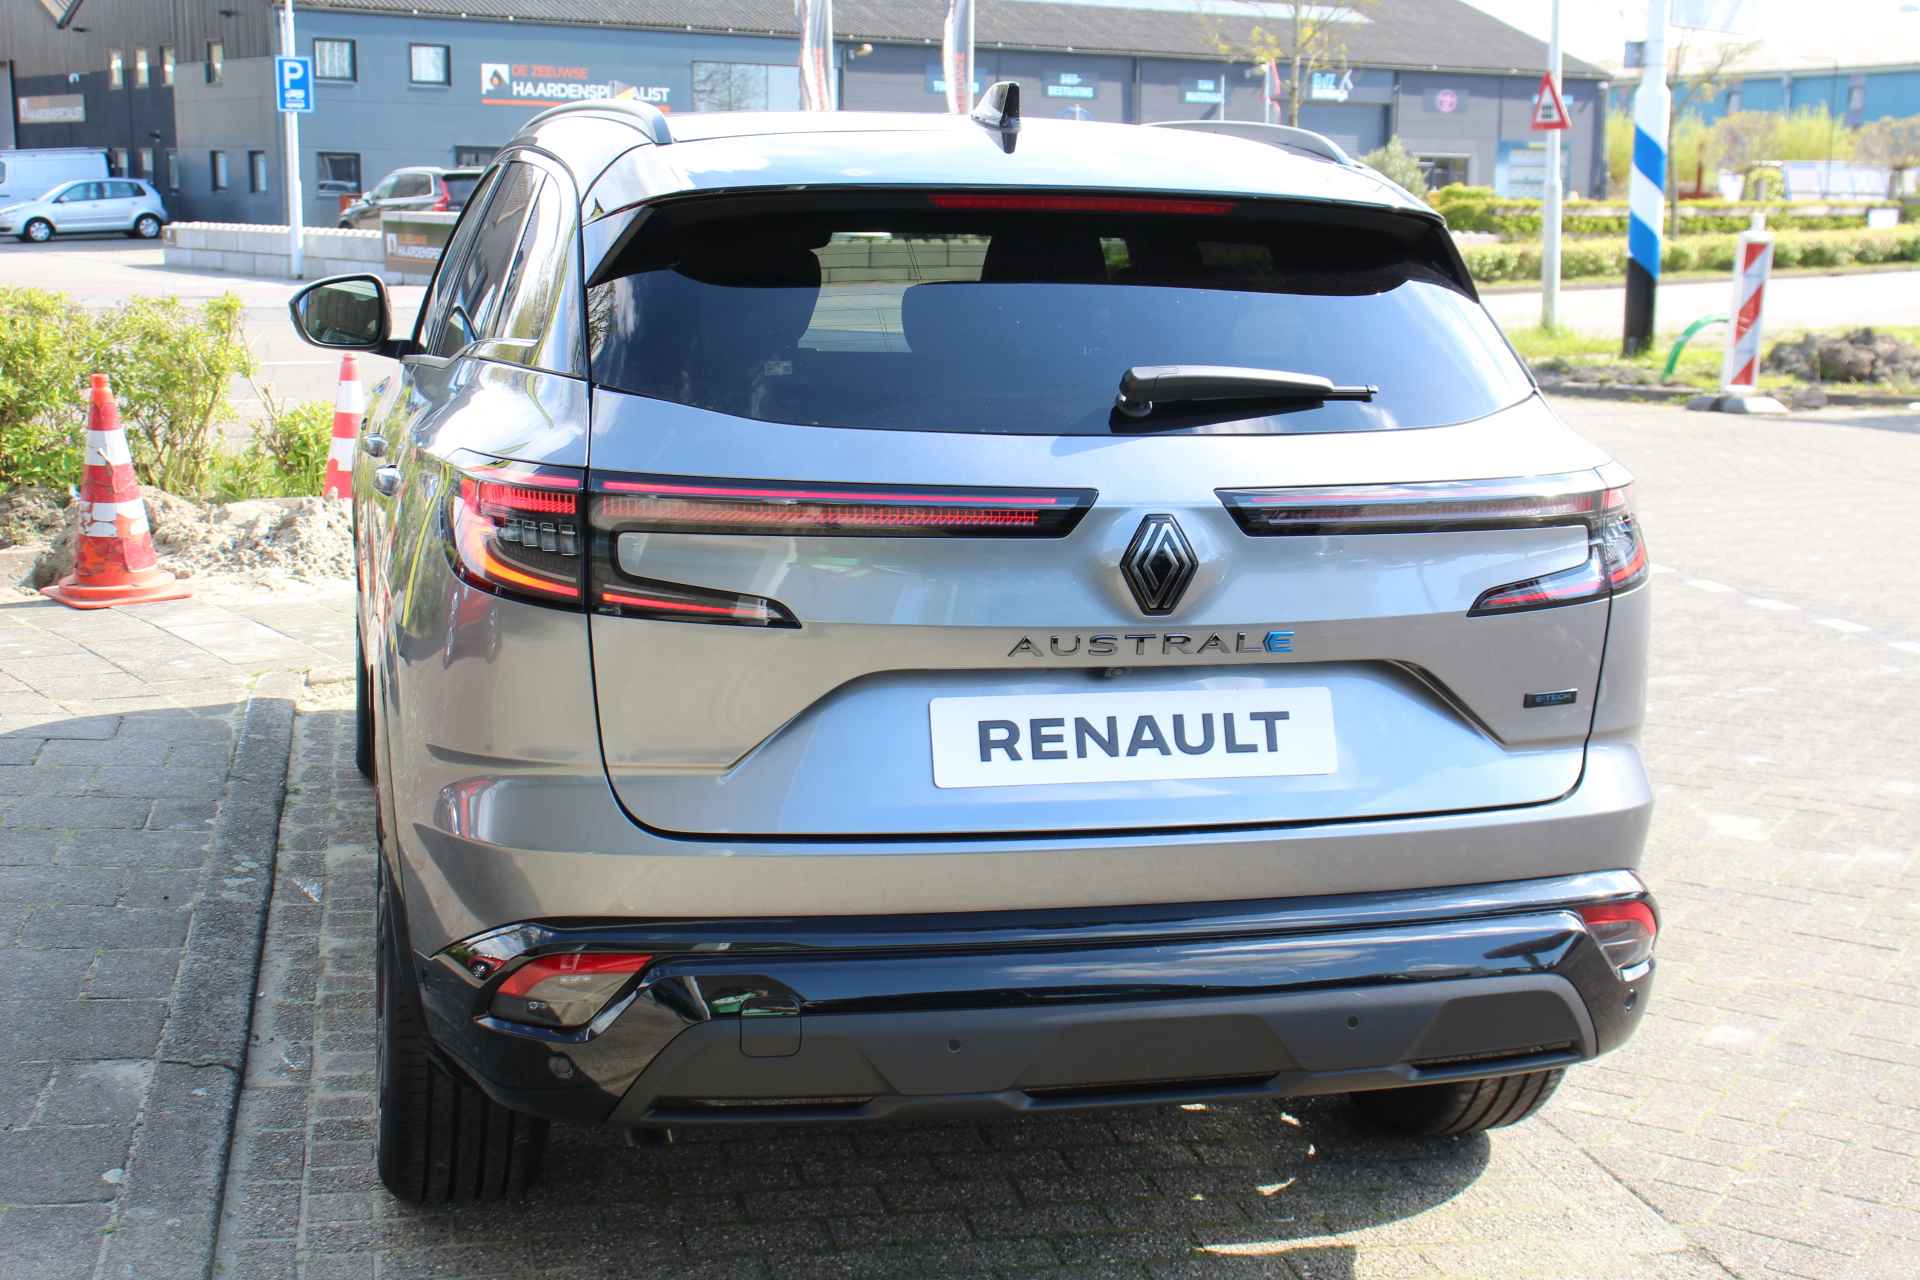 Renault Austral 1.2 E-Tech Hybrid 200 Techno Esprit Alpine Pack advanced driving assist/ Pack safety / Panoramisch vast glazen dak / Electrisch bedienbare achterklep - 15/44